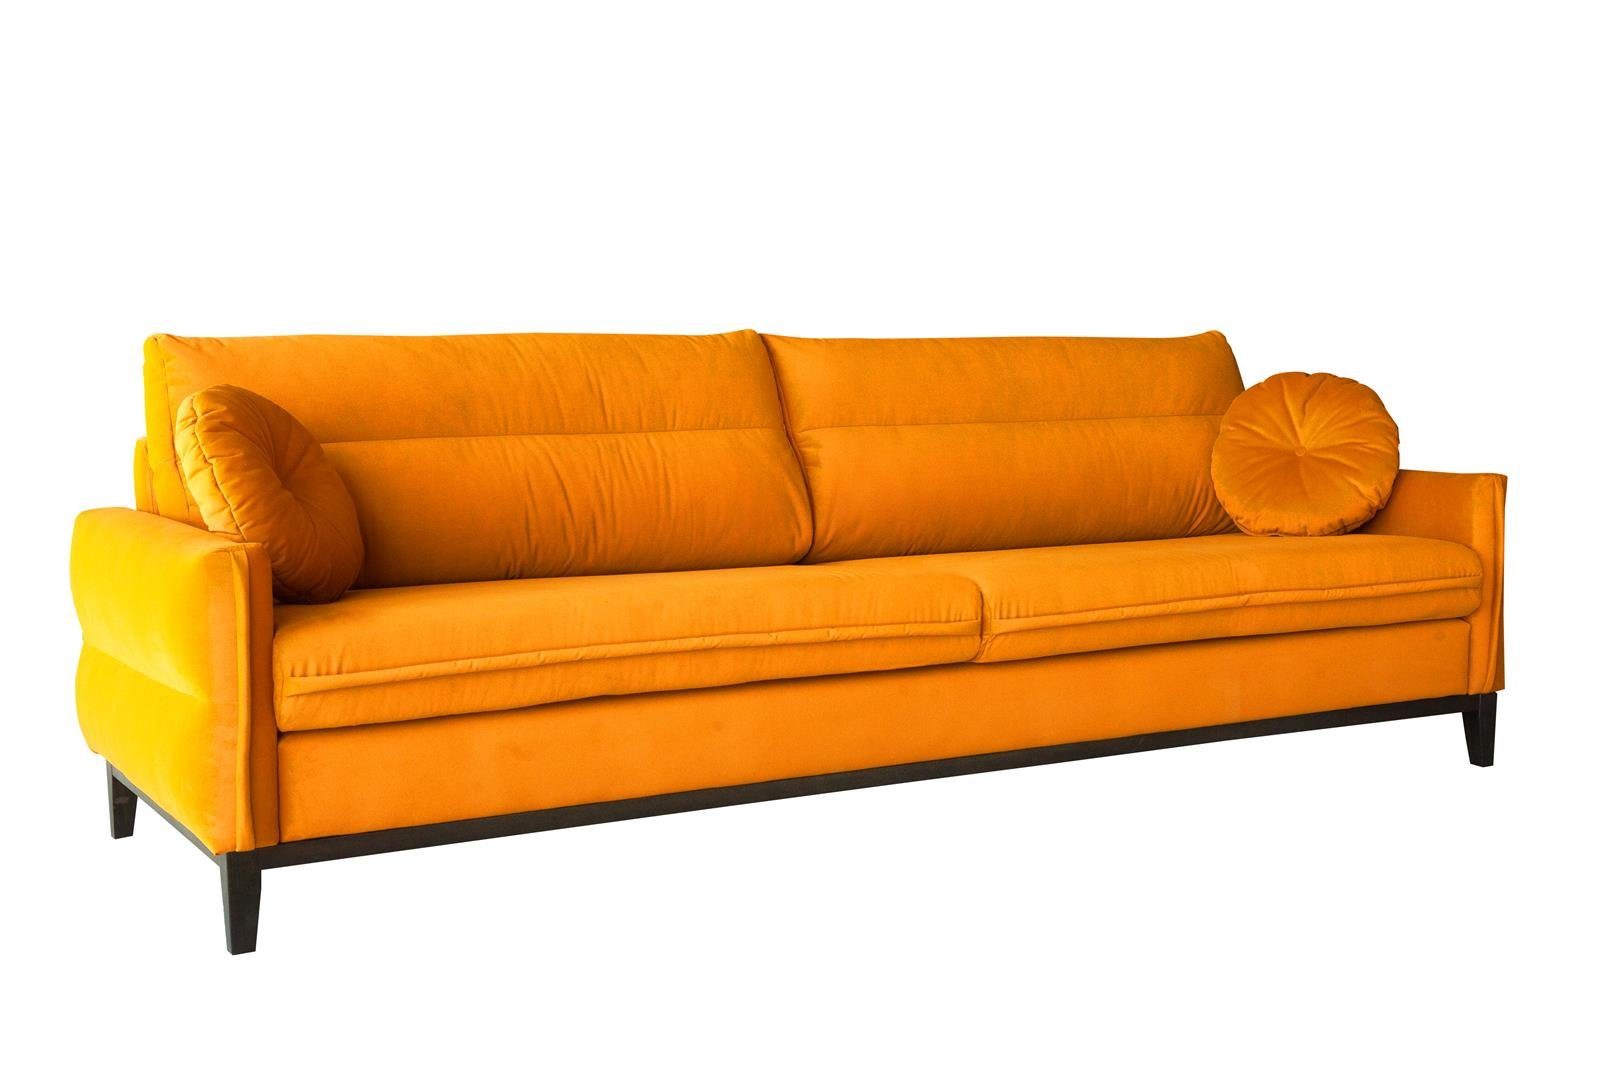 Beautysofa Sofa Belweder, 268 cm breite, Polstercouch für Wohnzimmer, 3-Sitzer Sofa aus Velourstoff, Dreisitzer im skandinavisches Stil Ginger (otusso 15)